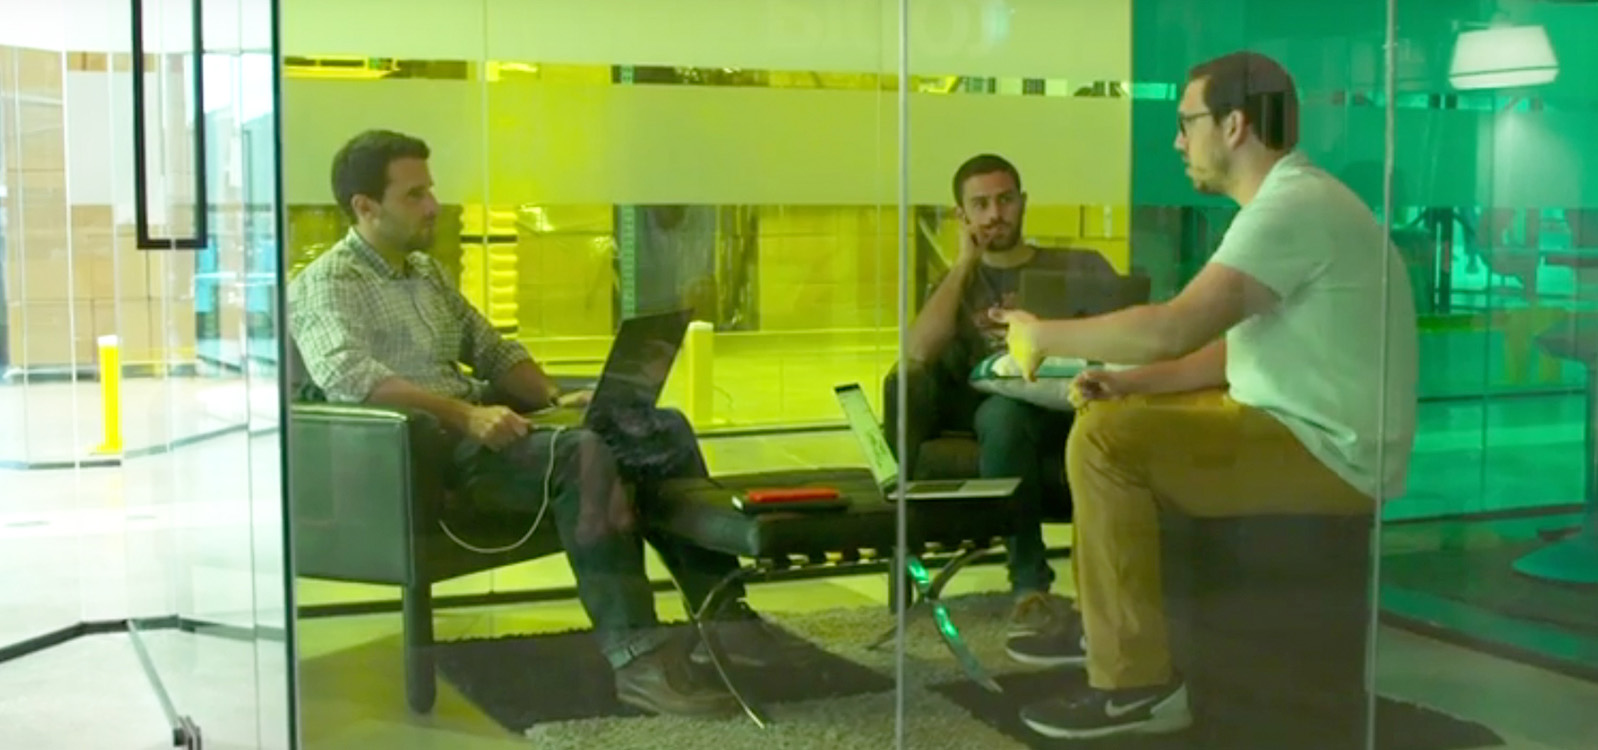 Três homens em uma reunião em uma sala de reuniões pequena com paredes de vidro